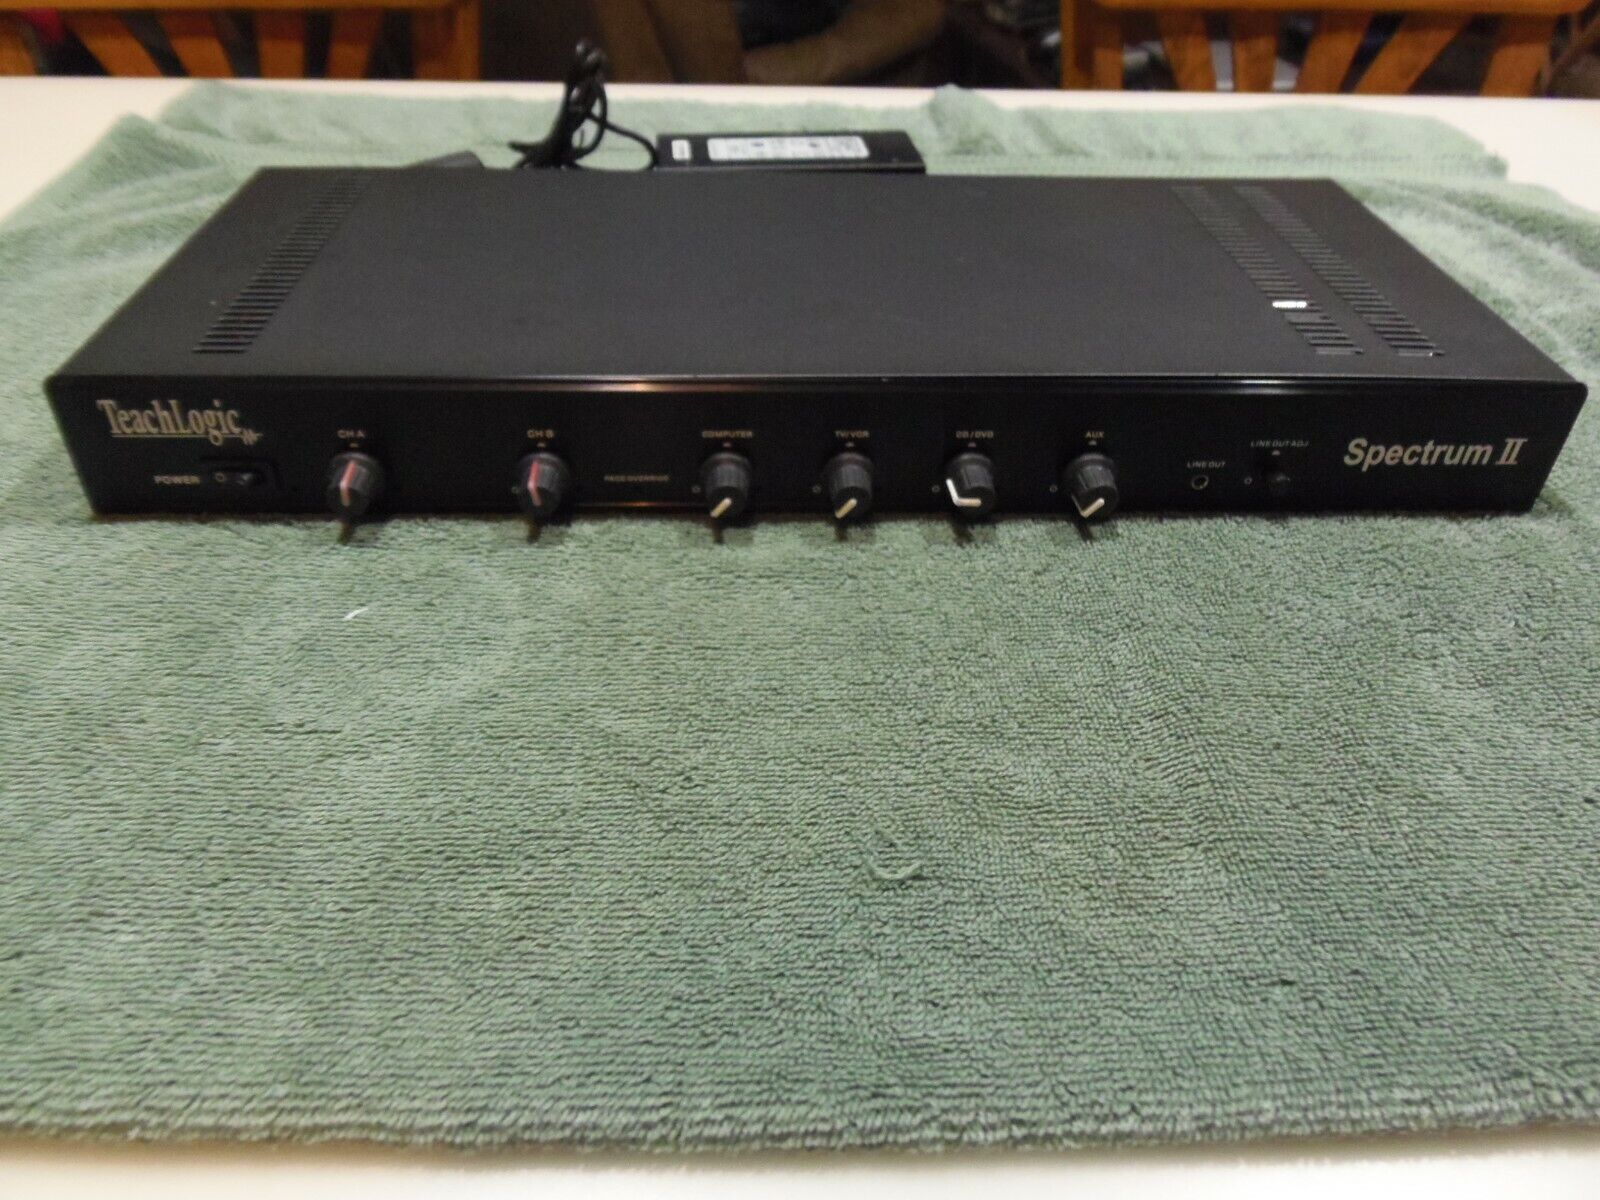 TechLogic IMA-700 Spectrum II Amplifier